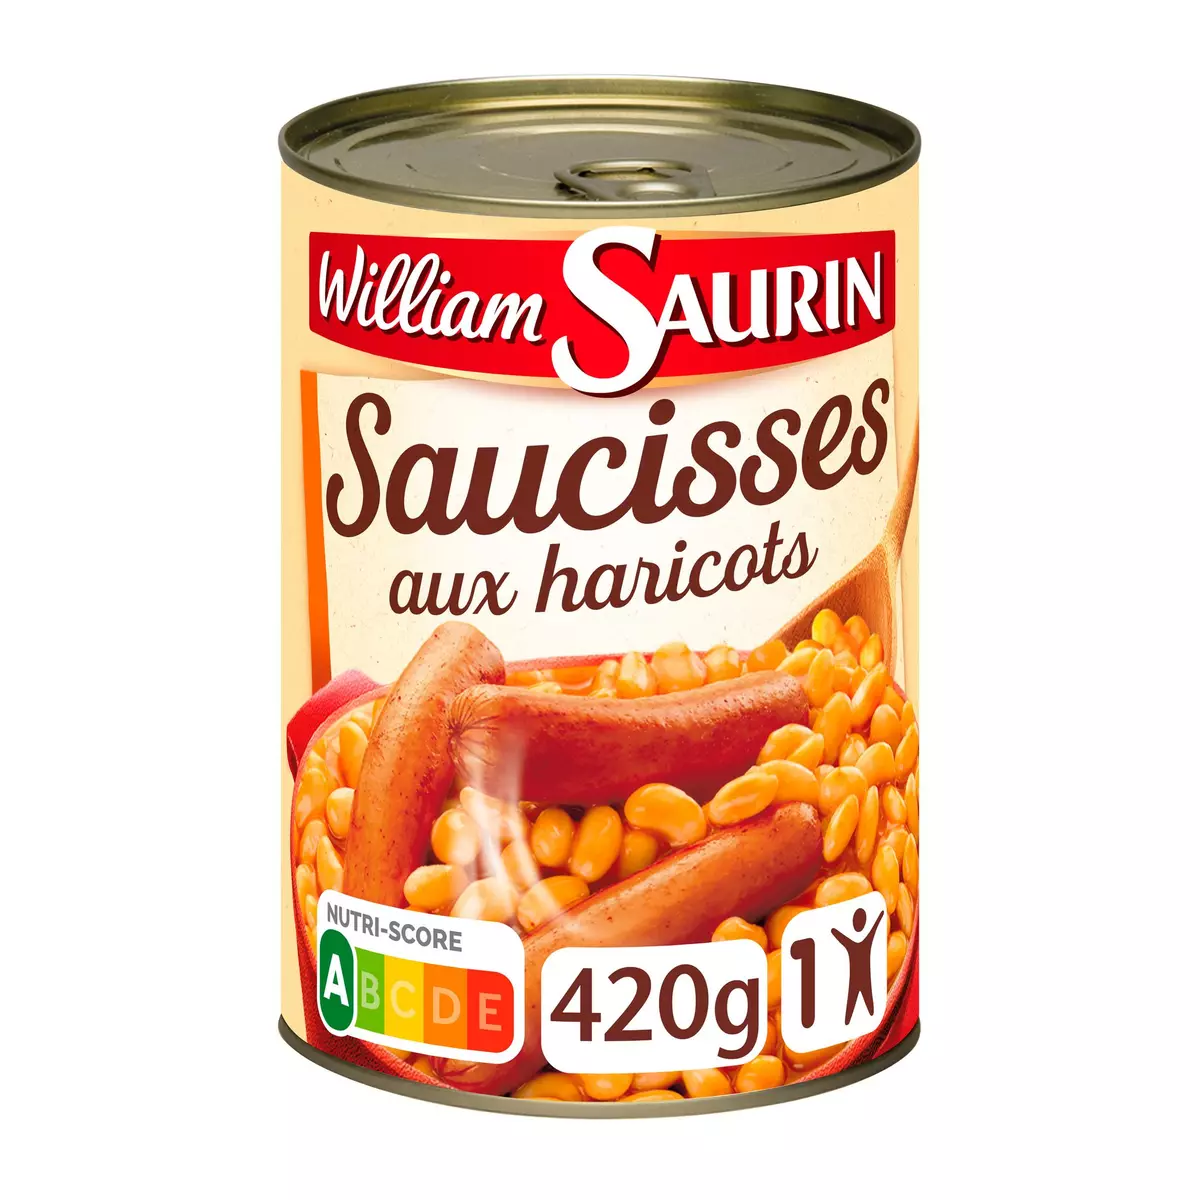 WILLIAM SAURIN Saucisses aux haricots 1 personne 420g